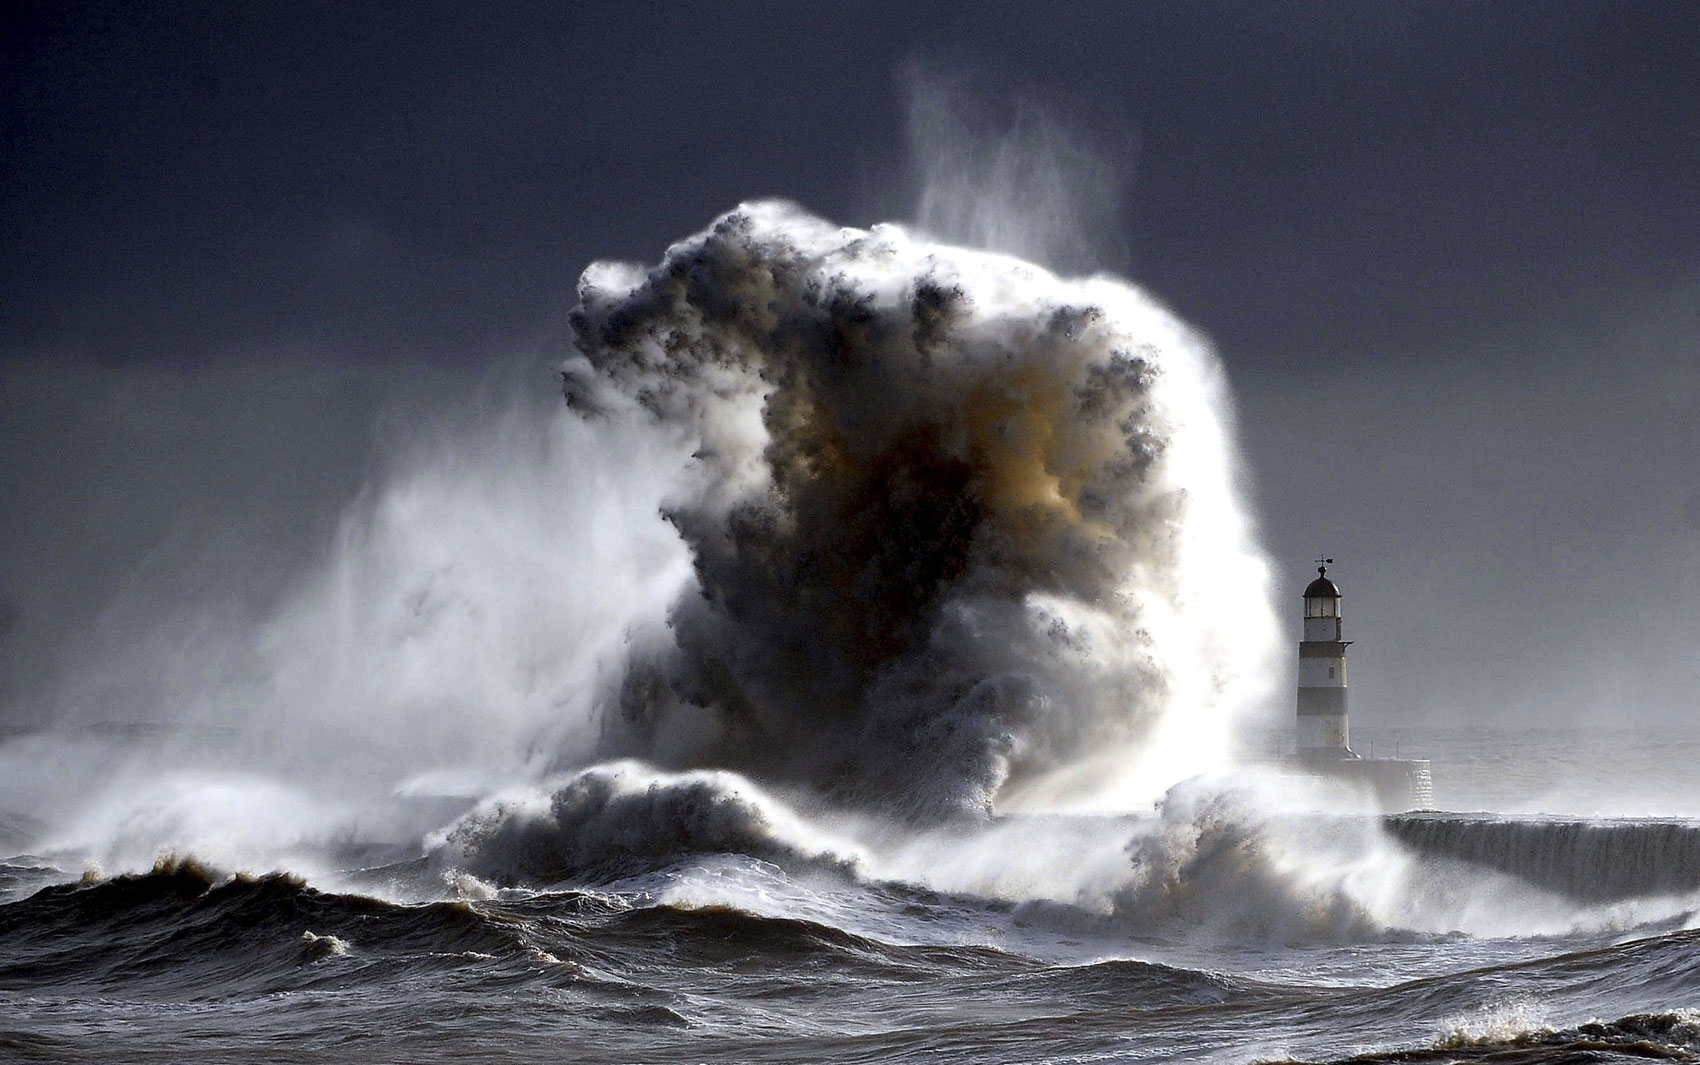 Mar agitado e força do vento geram ondas gigantes na costa de Seaham, no nordeste da Inglaterra. O país se prepara com as previsões de fortes nevascas e ventanias para os próximos dias.